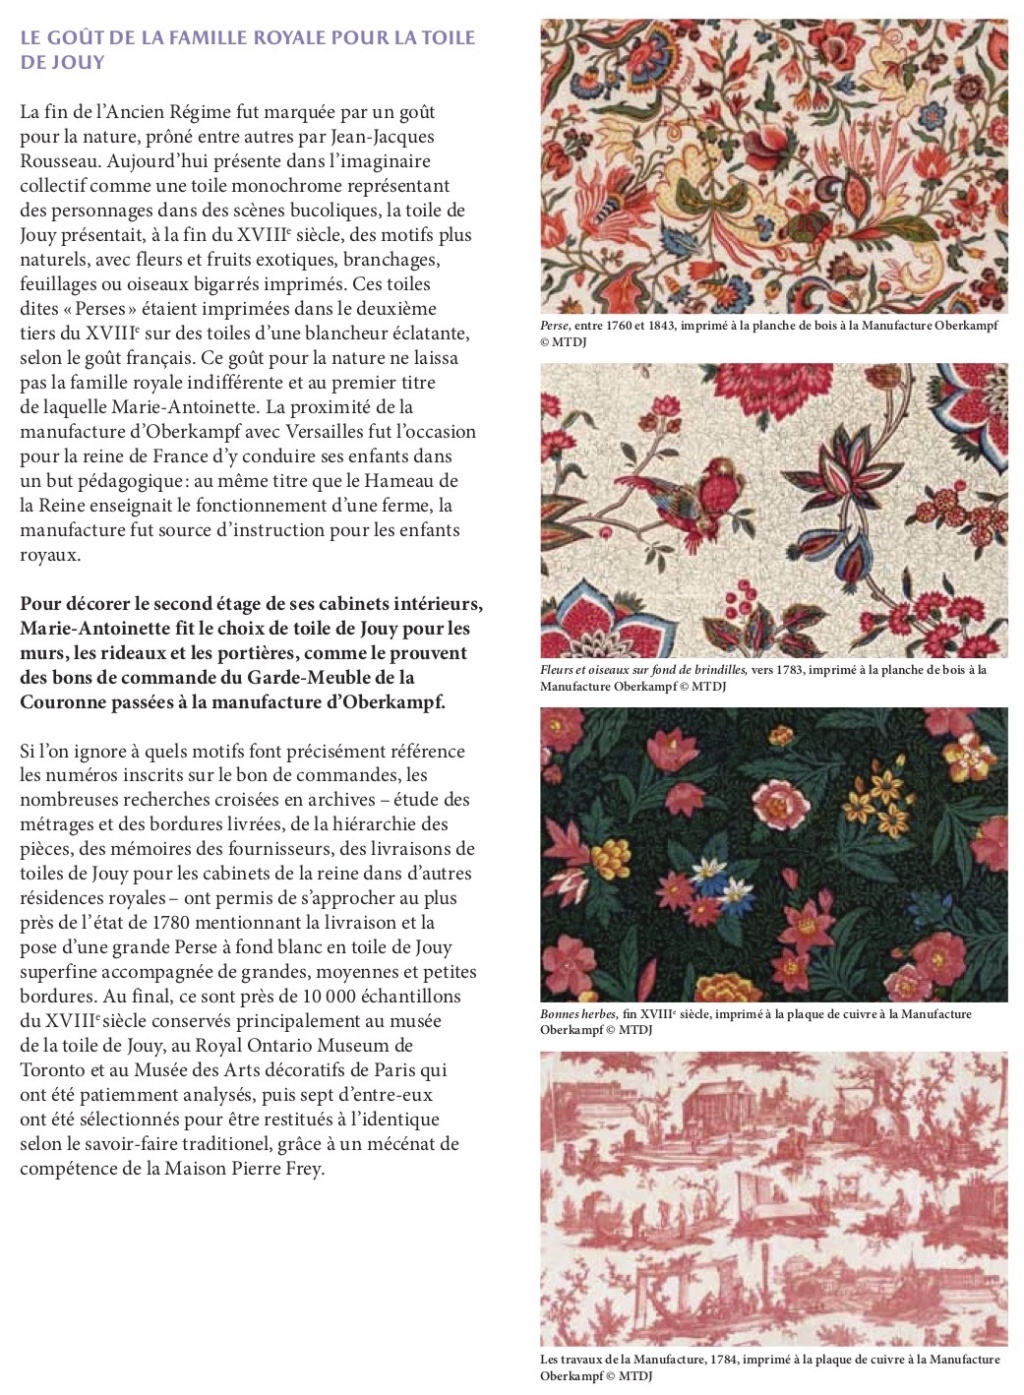 Les toiles de Jouy et la manufacture de Christophe-Philippe Oberkampf - Page 2 Dp_cab47